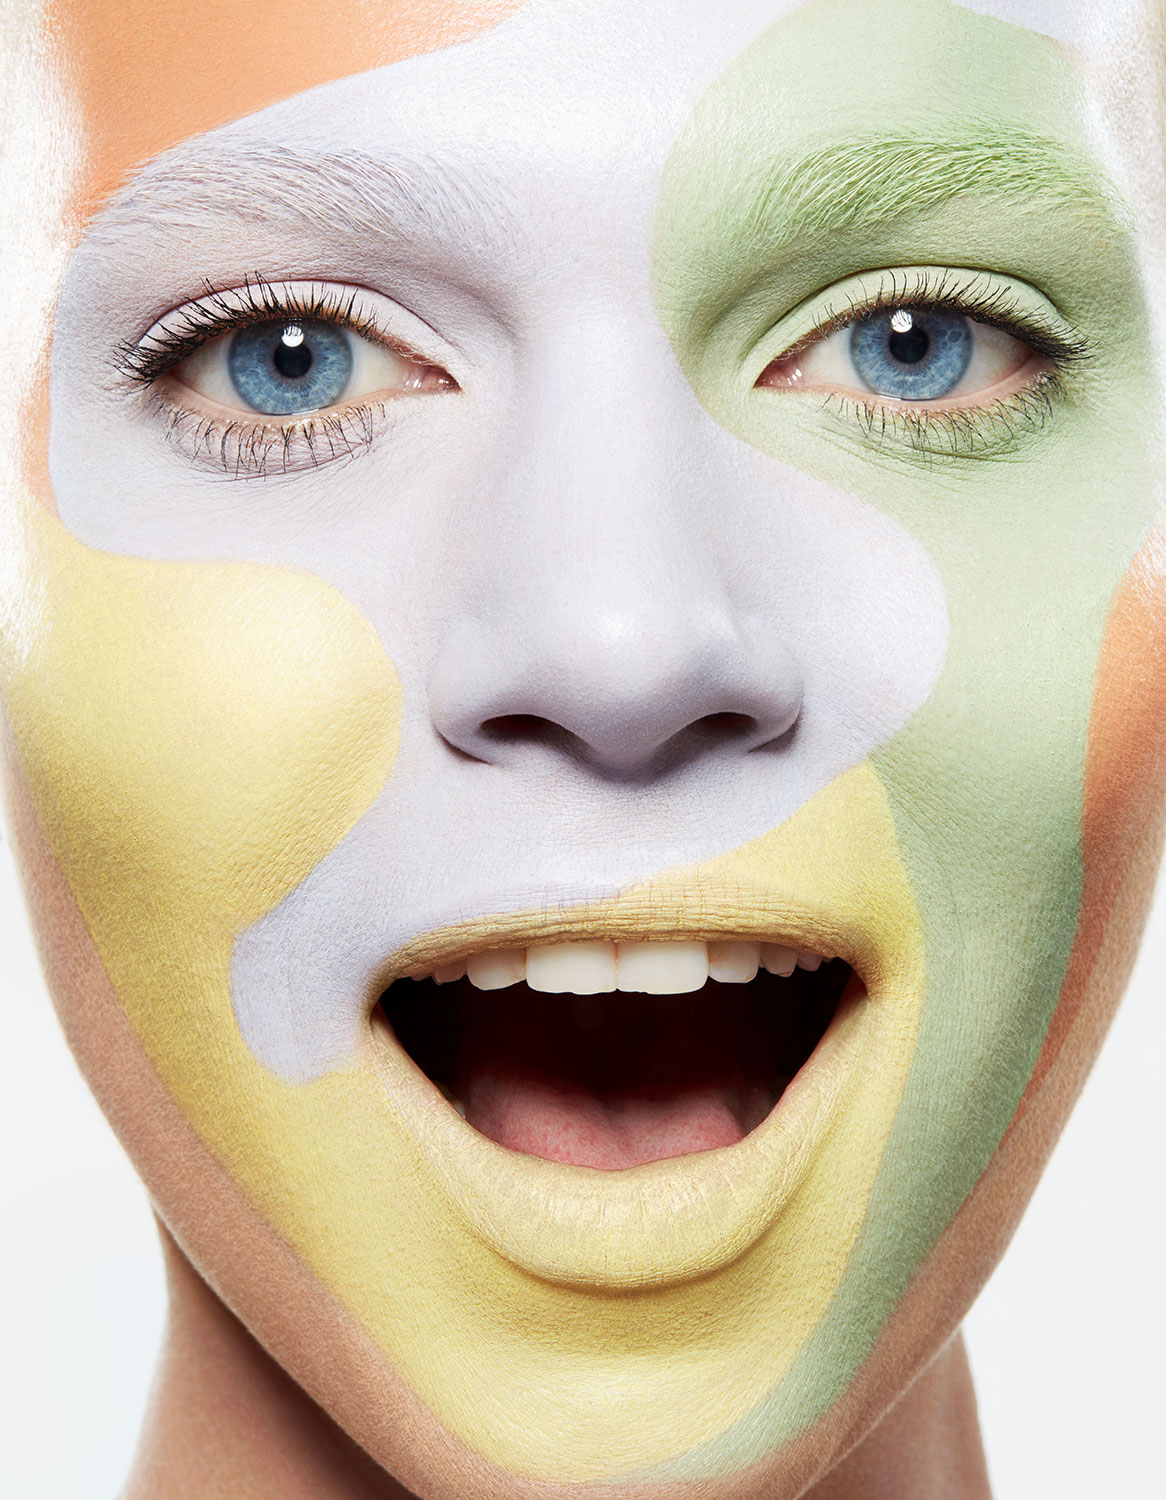 Maquillage : Sephora décline les cushion pour les lèvres et le